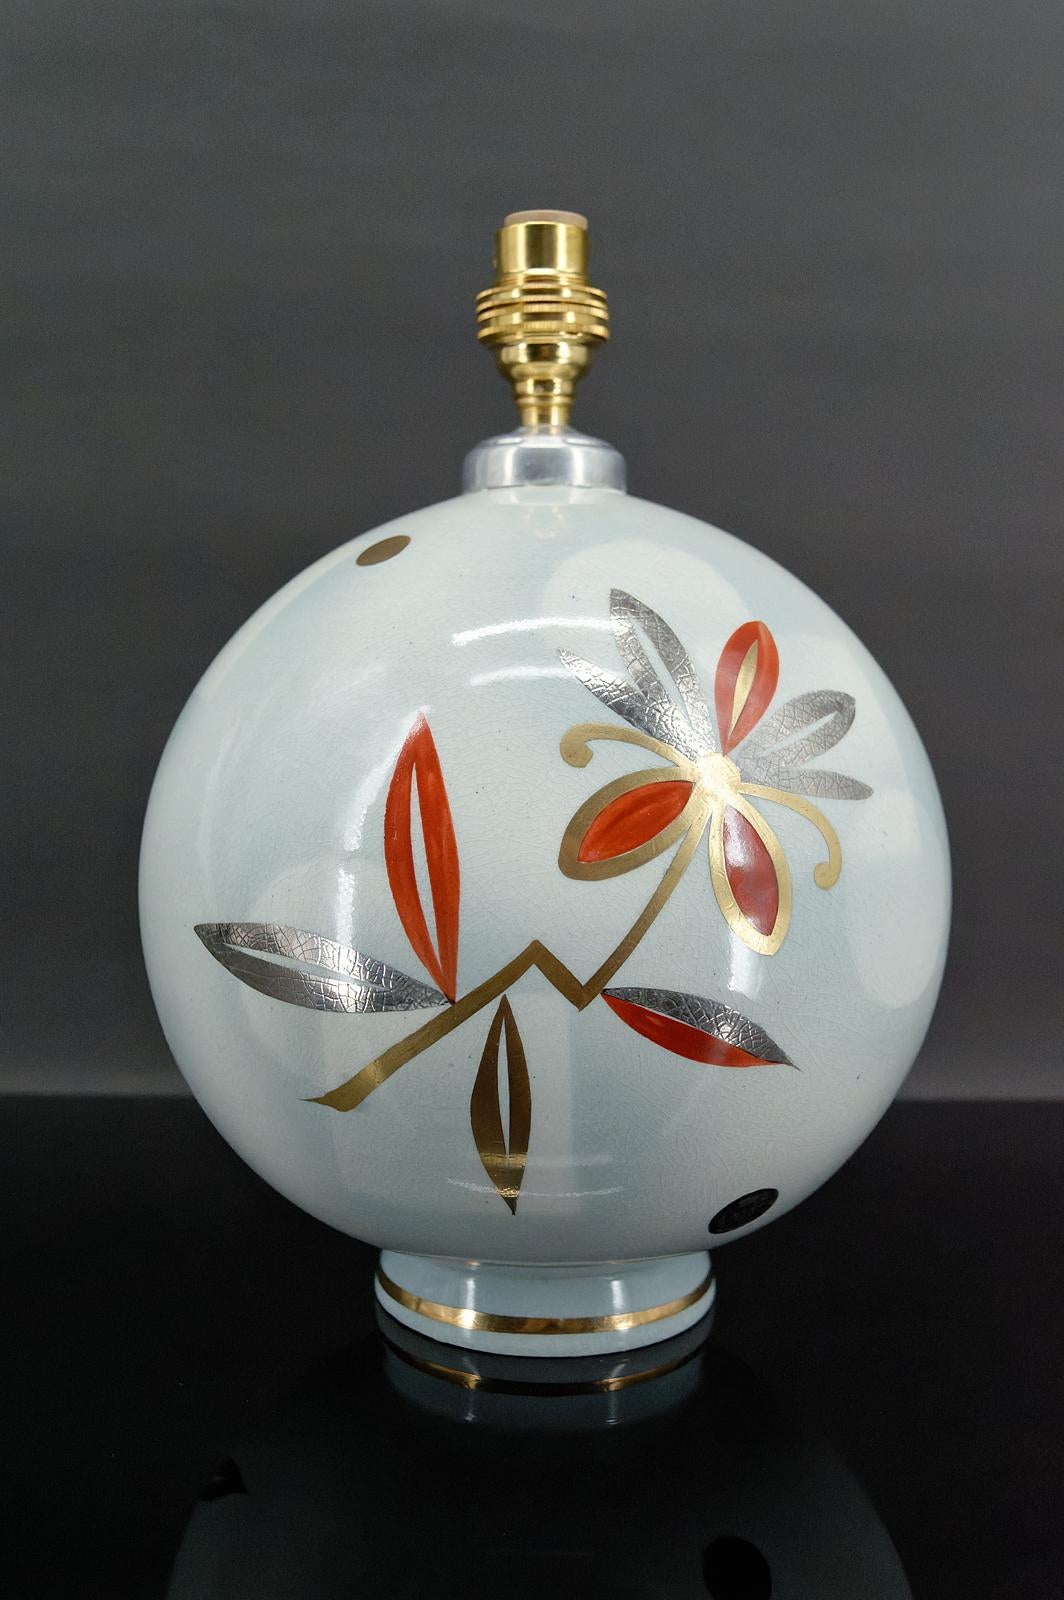 Kugellampe von der Faïencerie de Sainte Radegonde für Primavera.
Art Deco, Frankreich, um 1925

Aus weißer Keramik, verziert mit stilisierten Blumen in Rot-, Gold- und Silbertönen.

Art Deco, Frankreich, um 1925.

In ausgezeichnetem Zustand, neuer